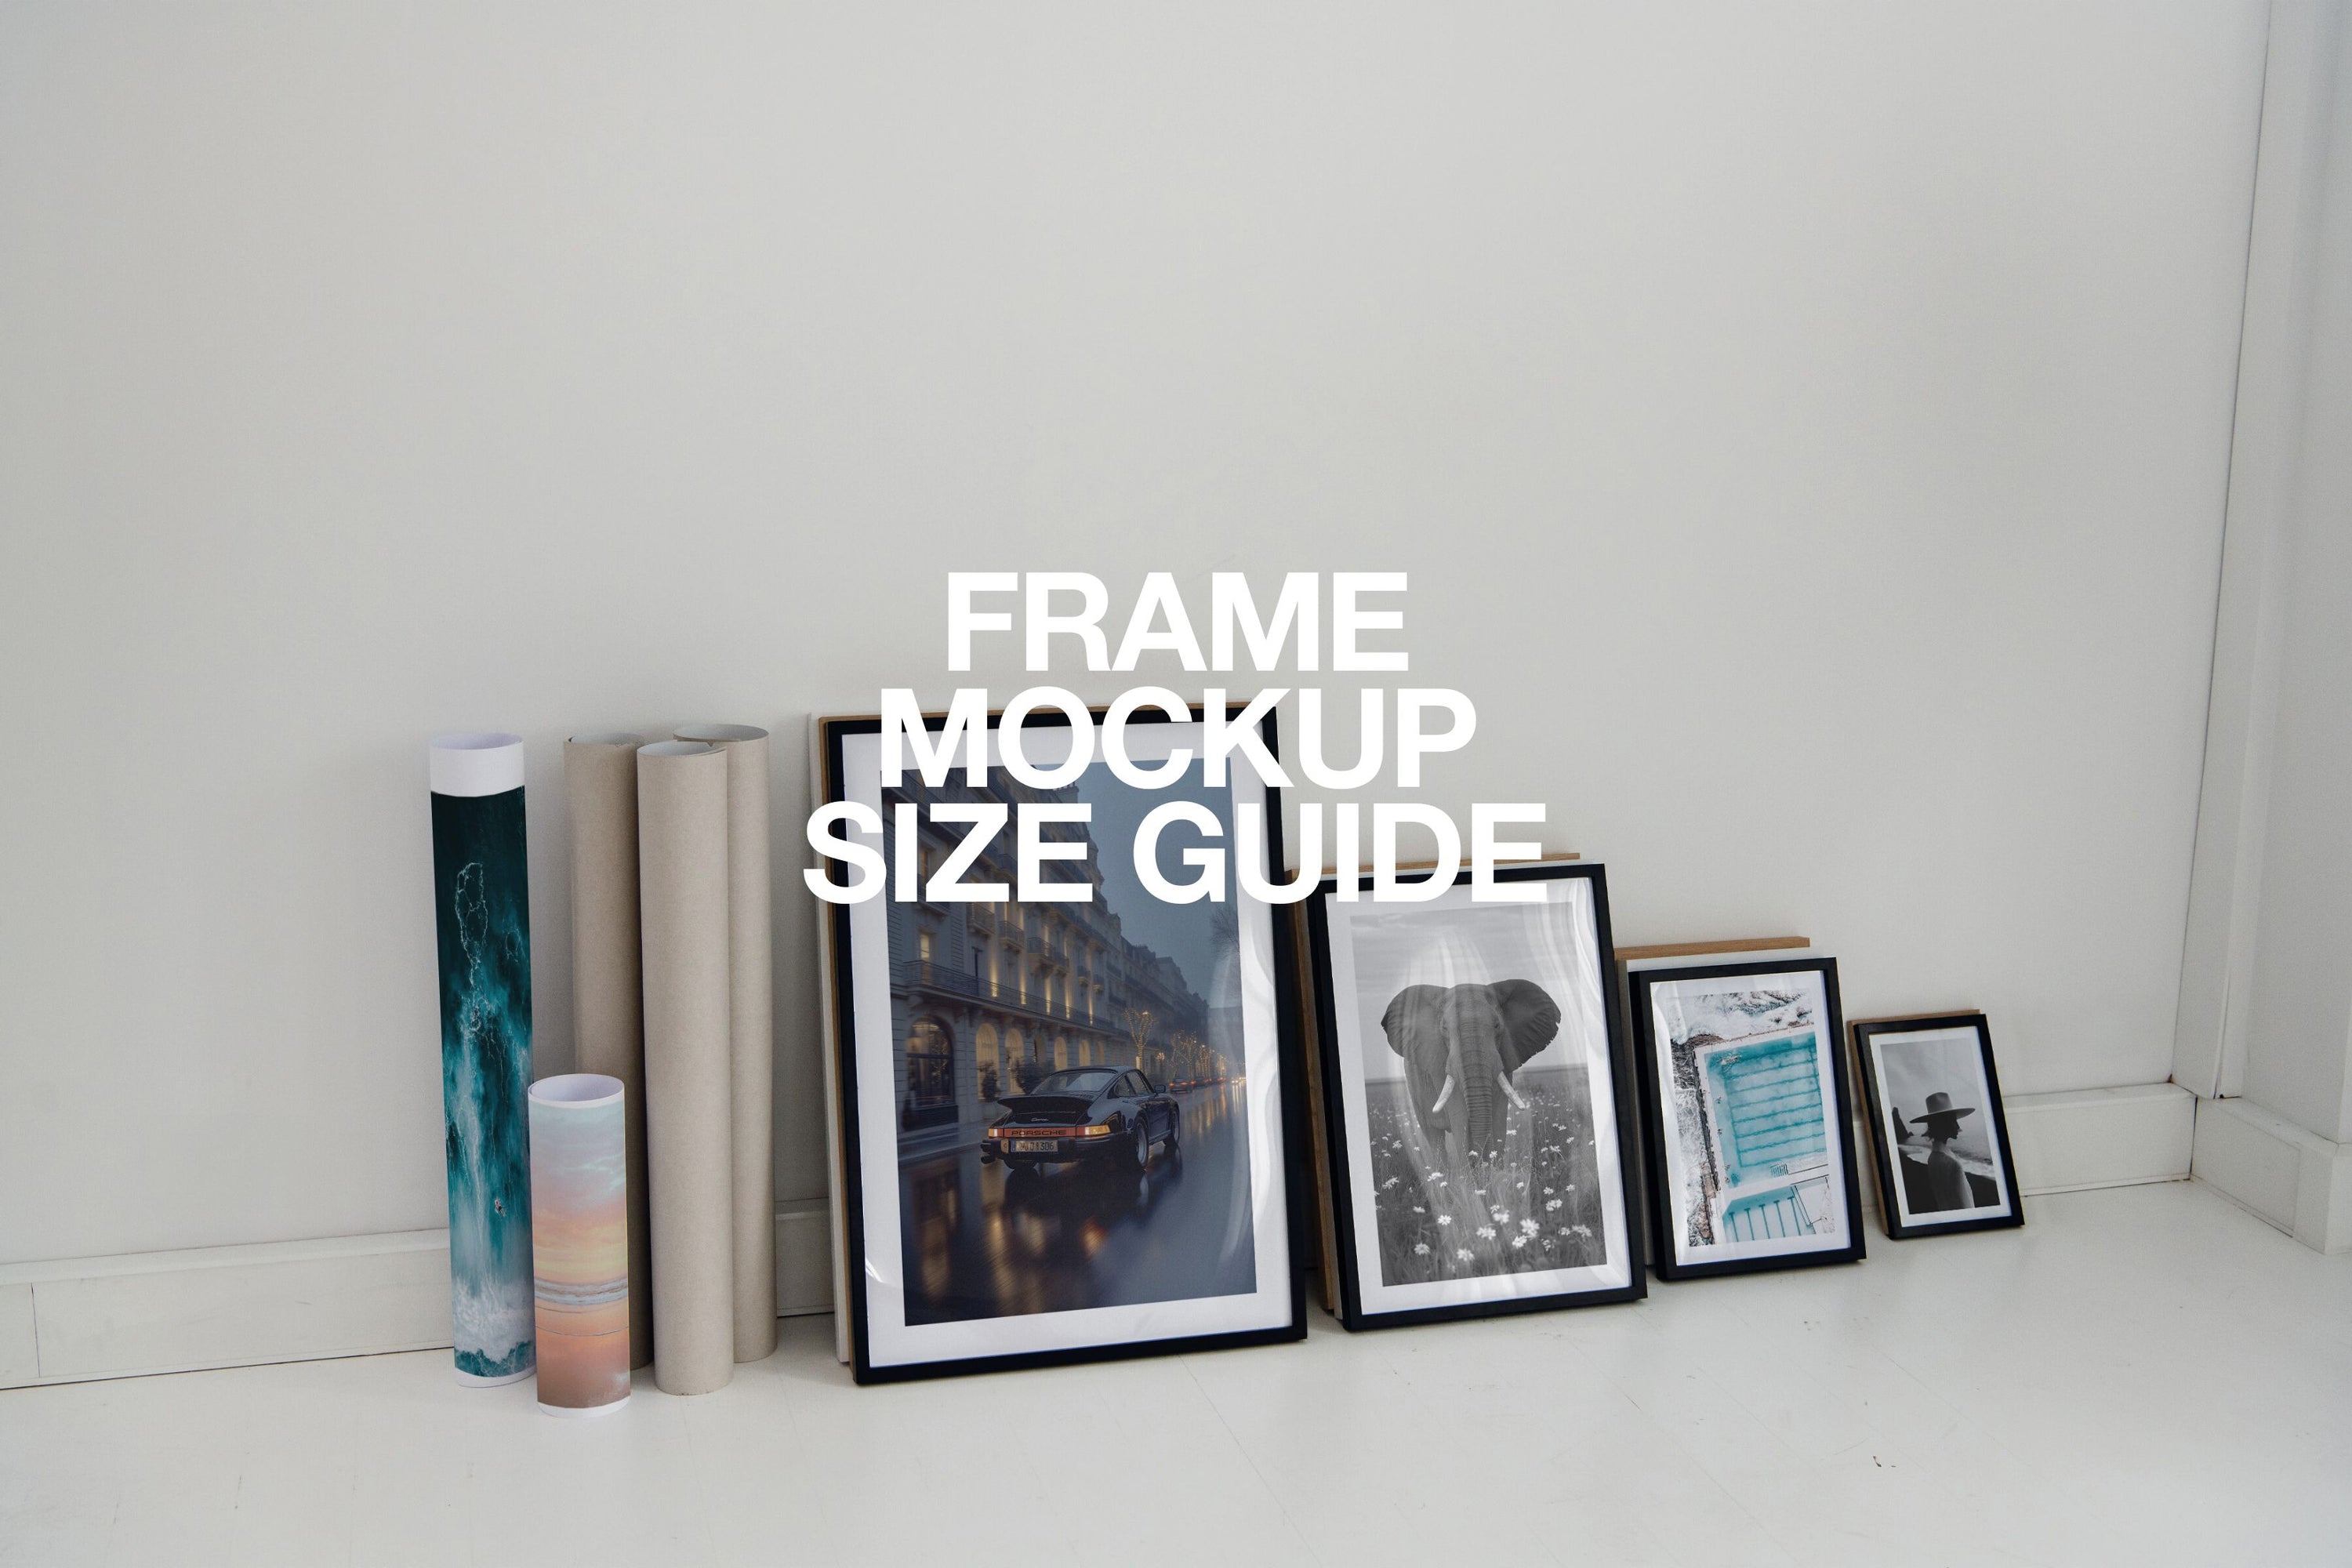 HH046 | The Studio | DIN A Size Guide Frame Mockup Set